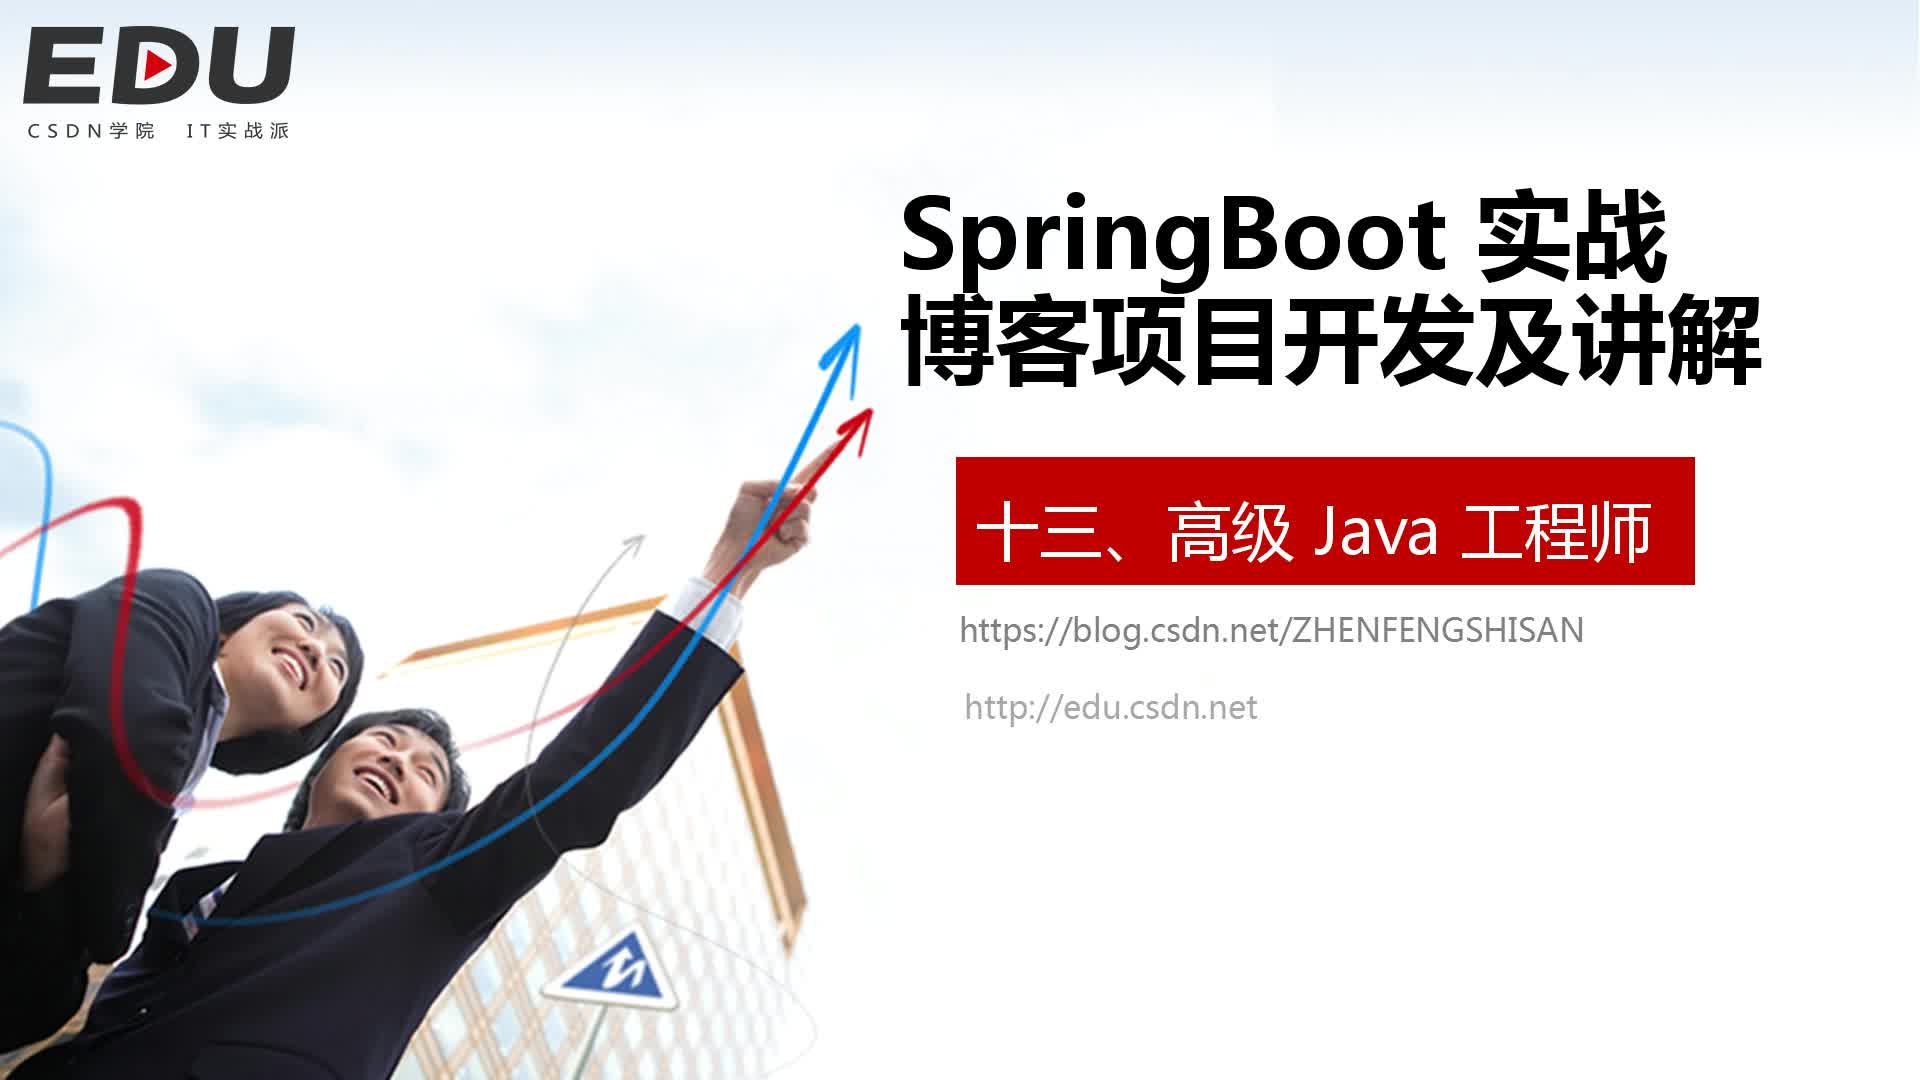 SpringBoot实战教程：SpringBoot 博客项目开发及讲解